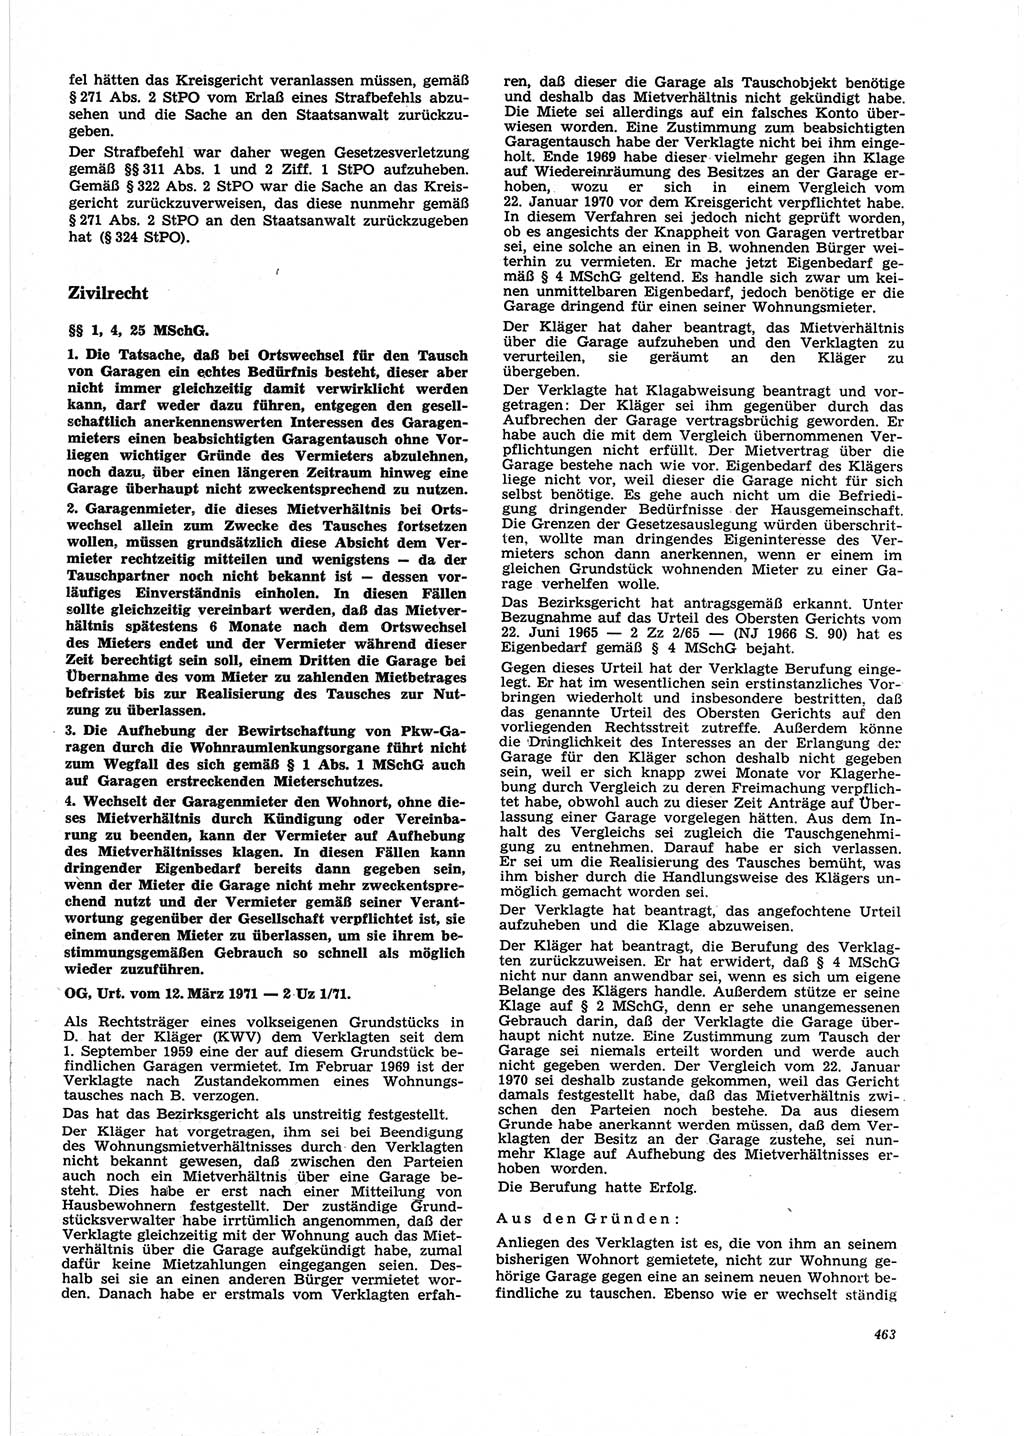 Neue Justiz (NJ), Zeitschrift für Recht und Rechtswissenschaft [Deutsche Demokratische Republik (DDR)], 25. Jahrgang 1971, Seite 463 (NJ DDR 1971, S. 463)